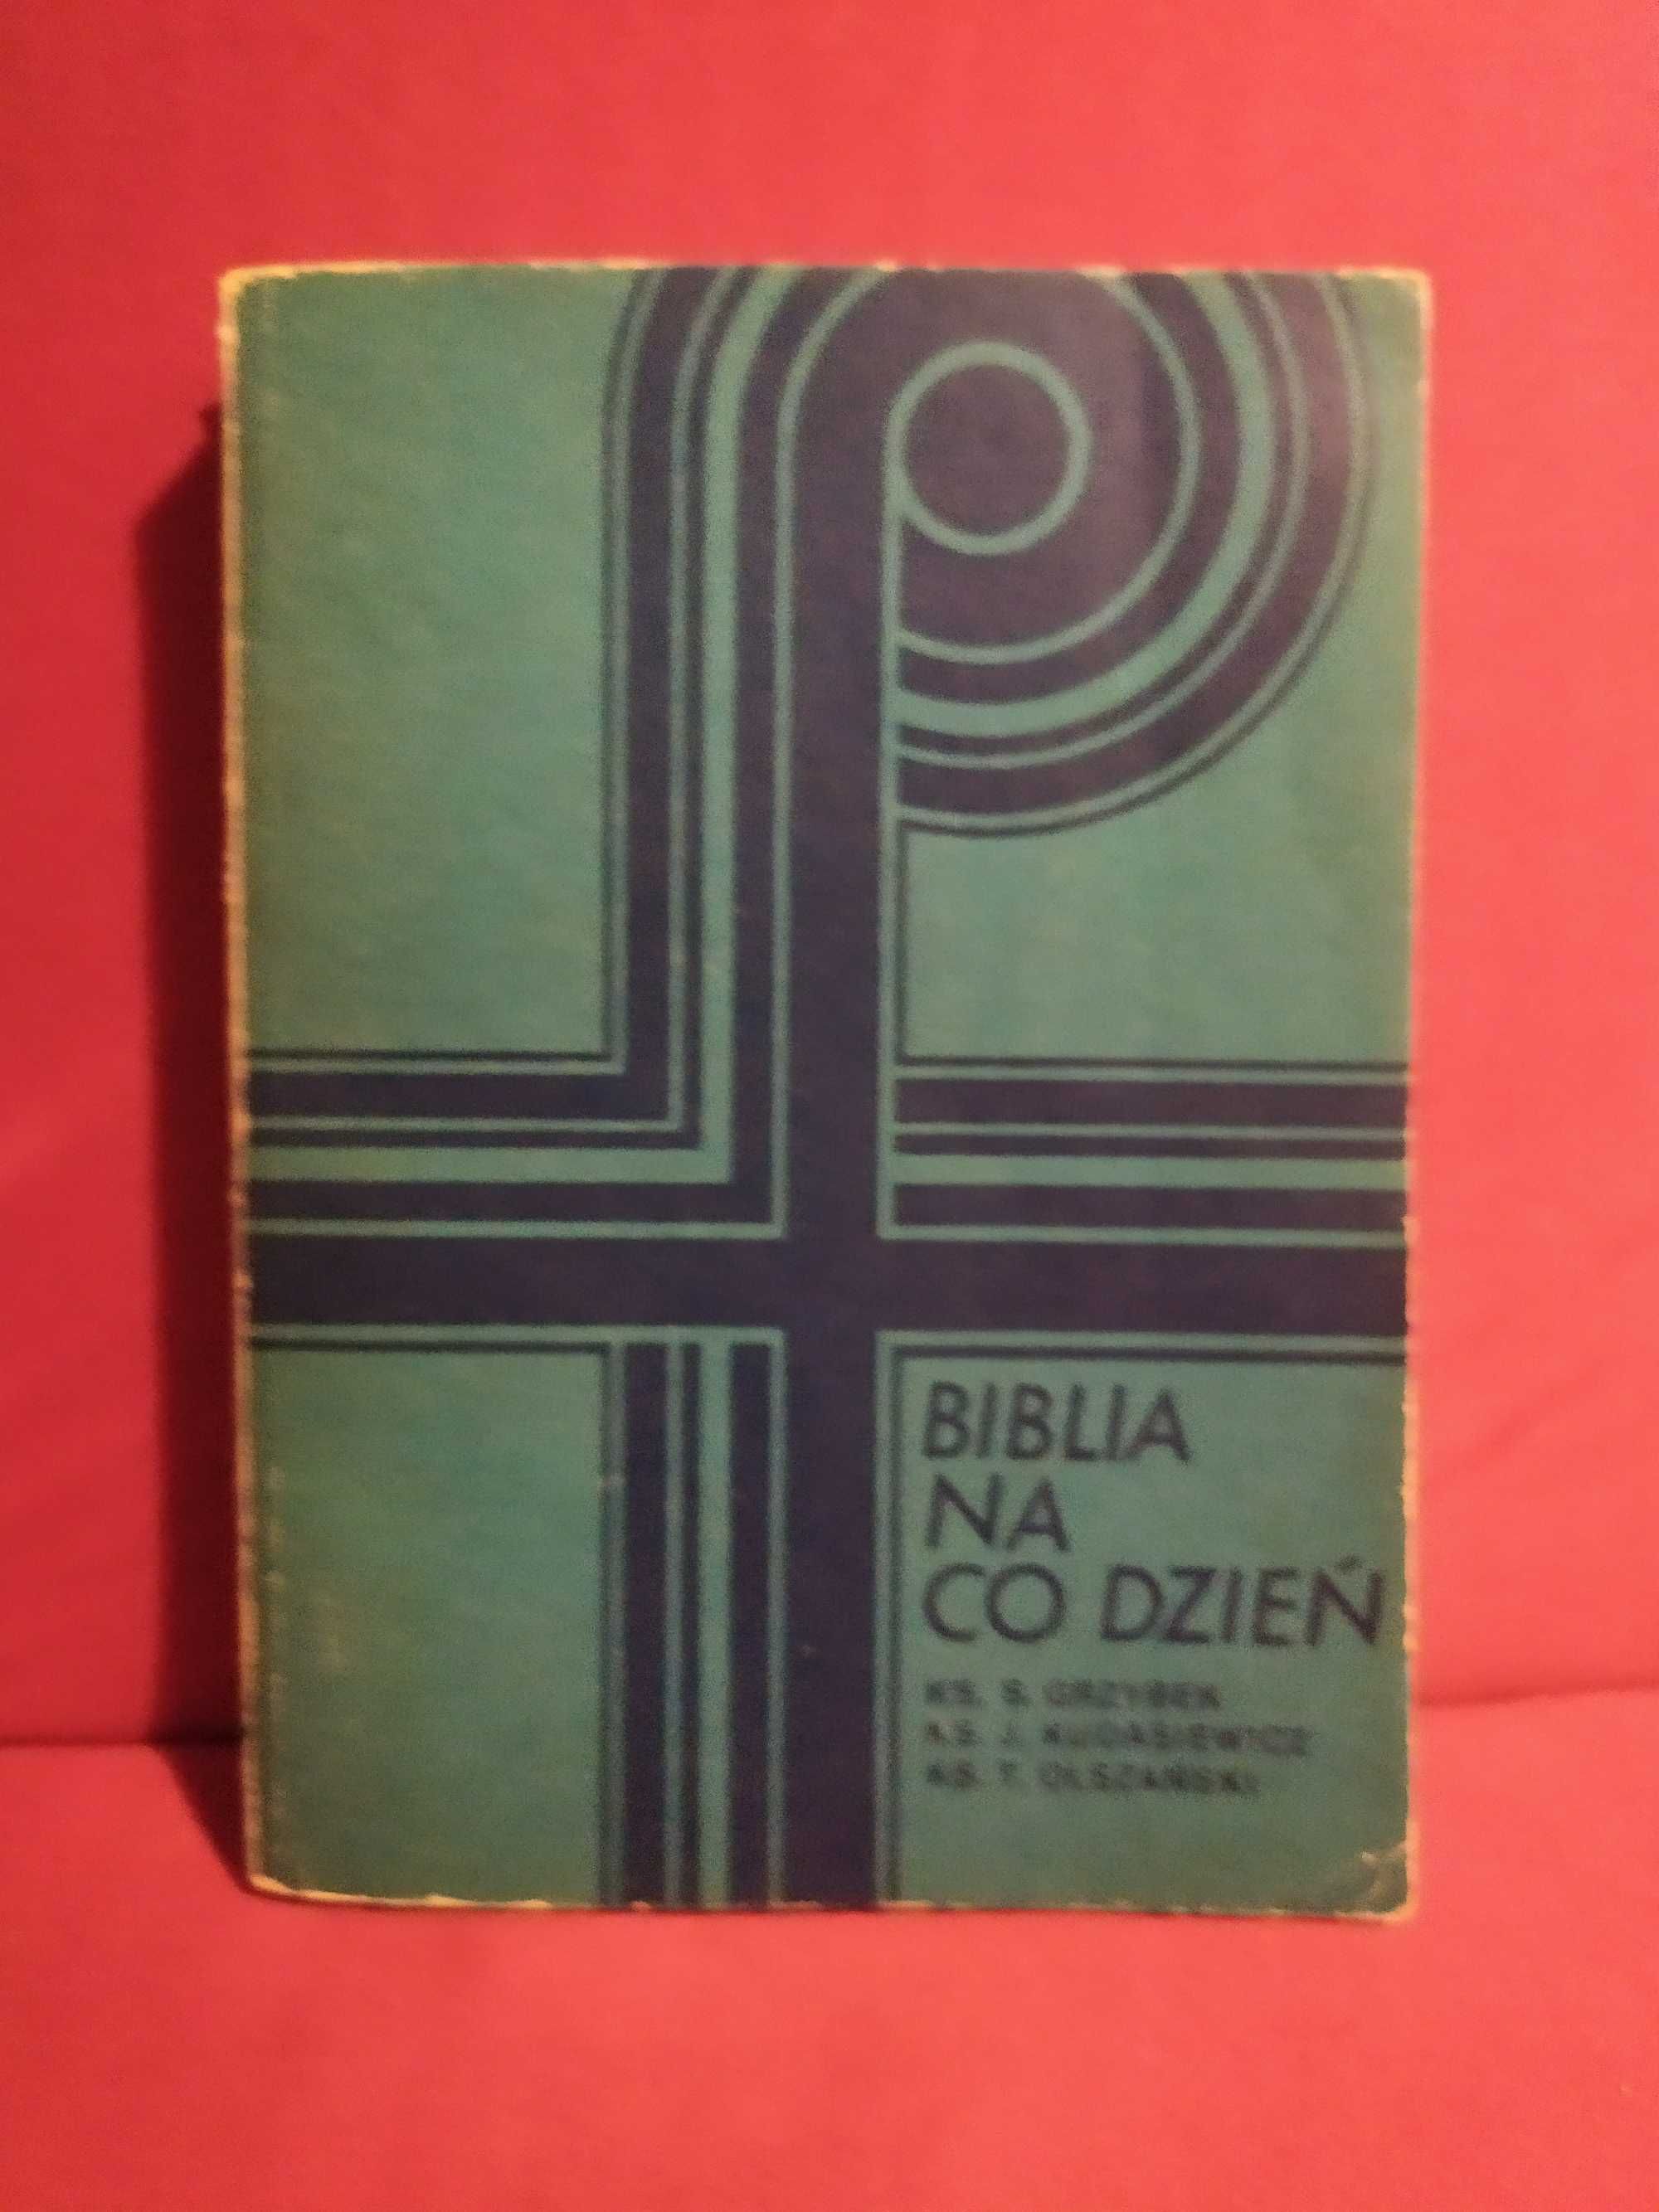 Biblia na co dzień - S. Grzybek, J. Dukasiewicz, T. Olszański